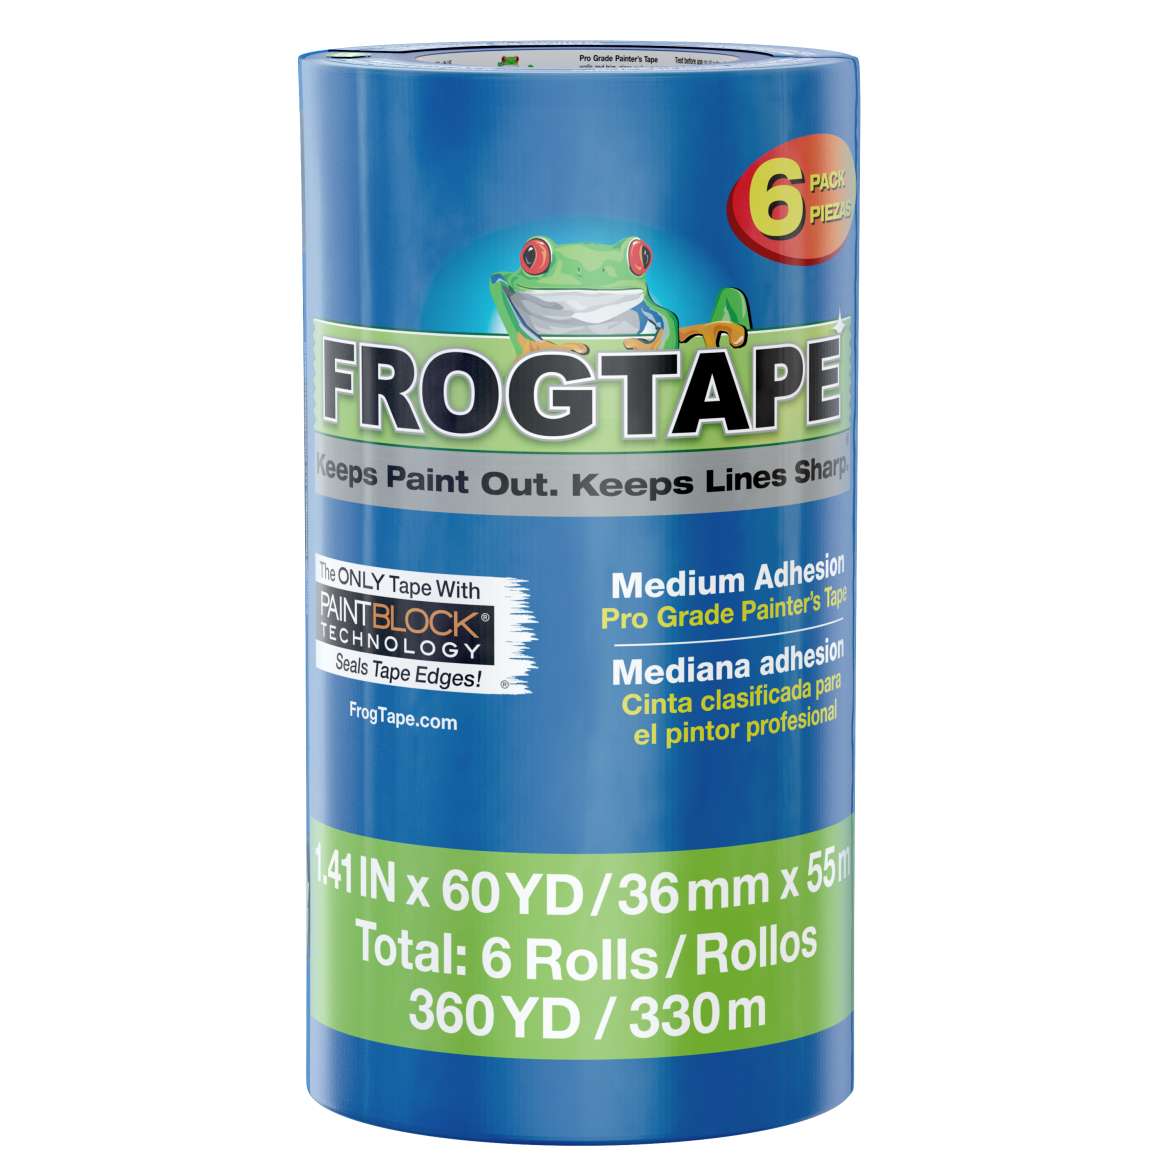 FrogTape® Pro Grade Painter’s Tape – Blue, 6 pk, 1.41 in. x 60 yd.